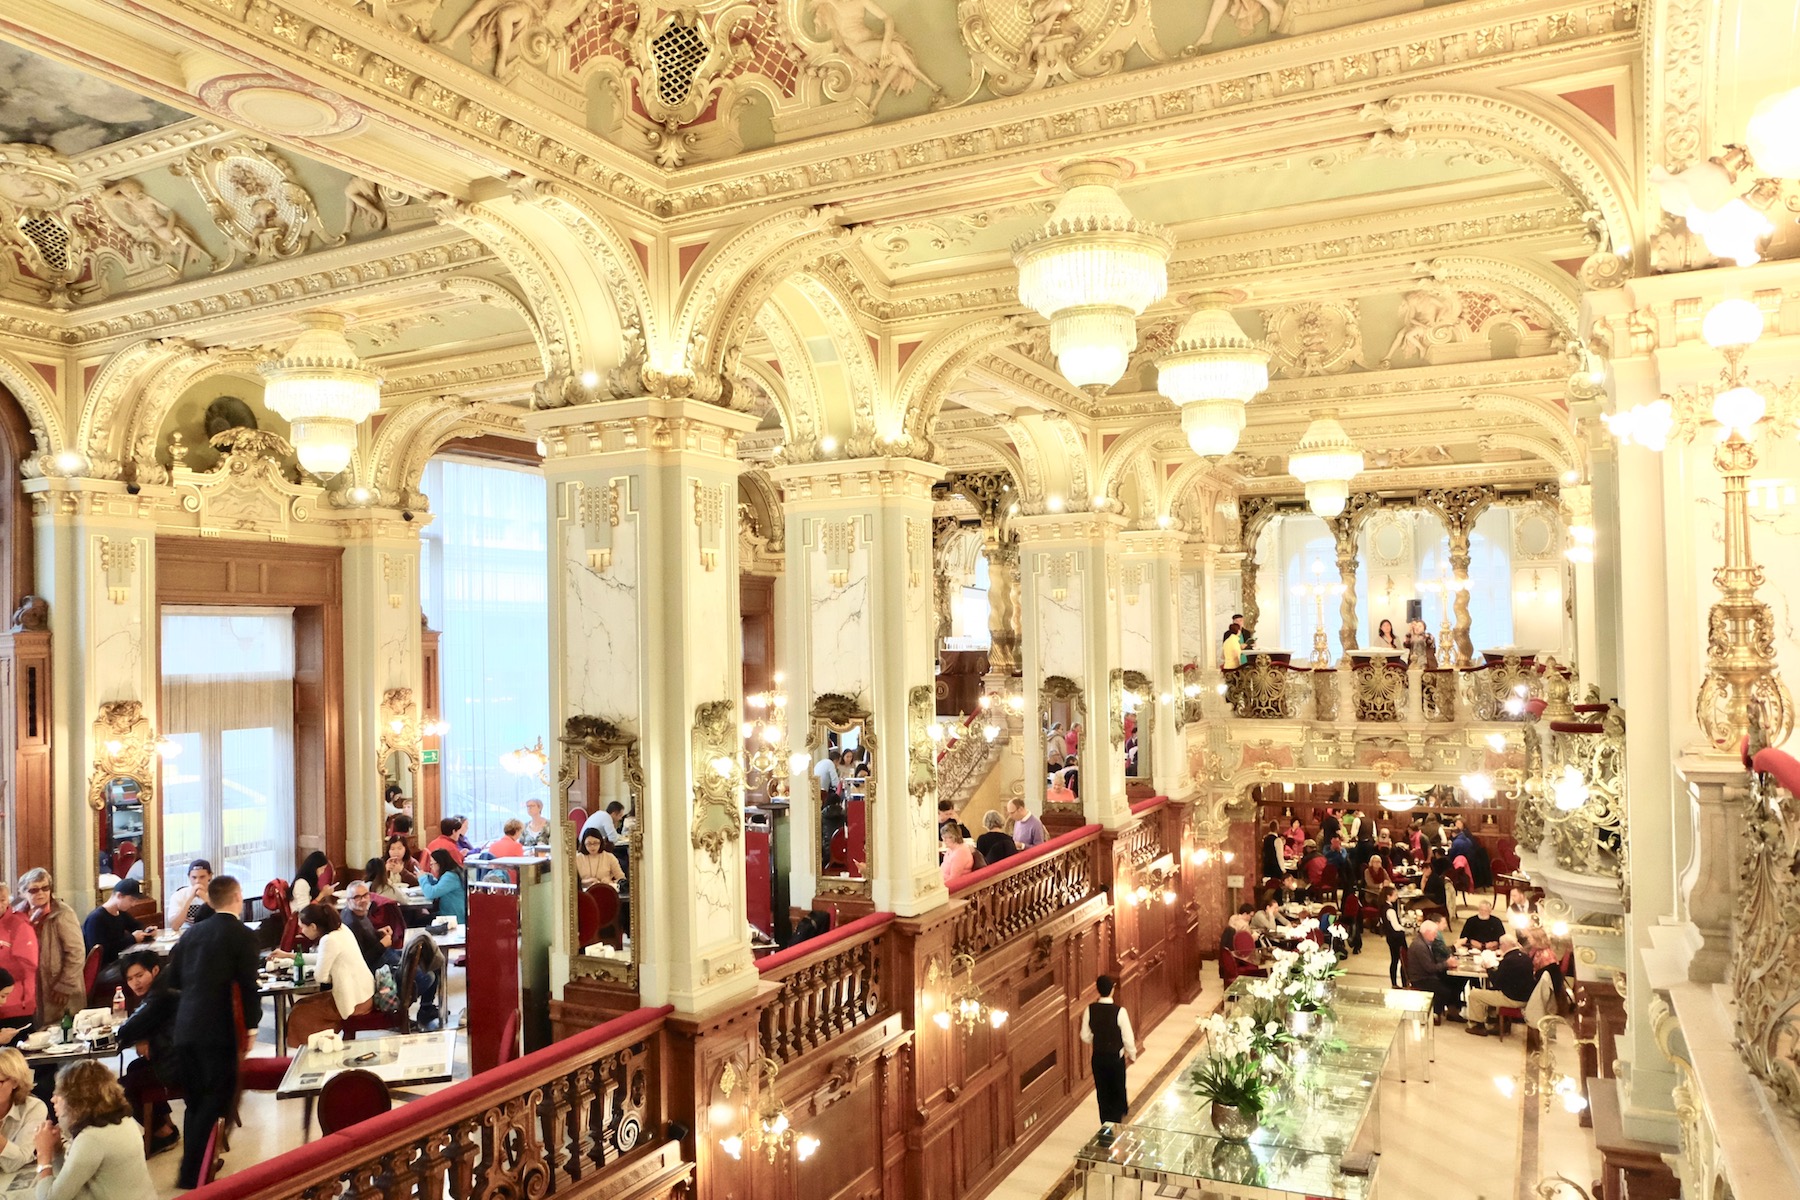 New York cafe - quán cafe đẹp như bảo tàng, 127 tuổi vẫn lộng lẫy ở Hungary - Ảnh 8